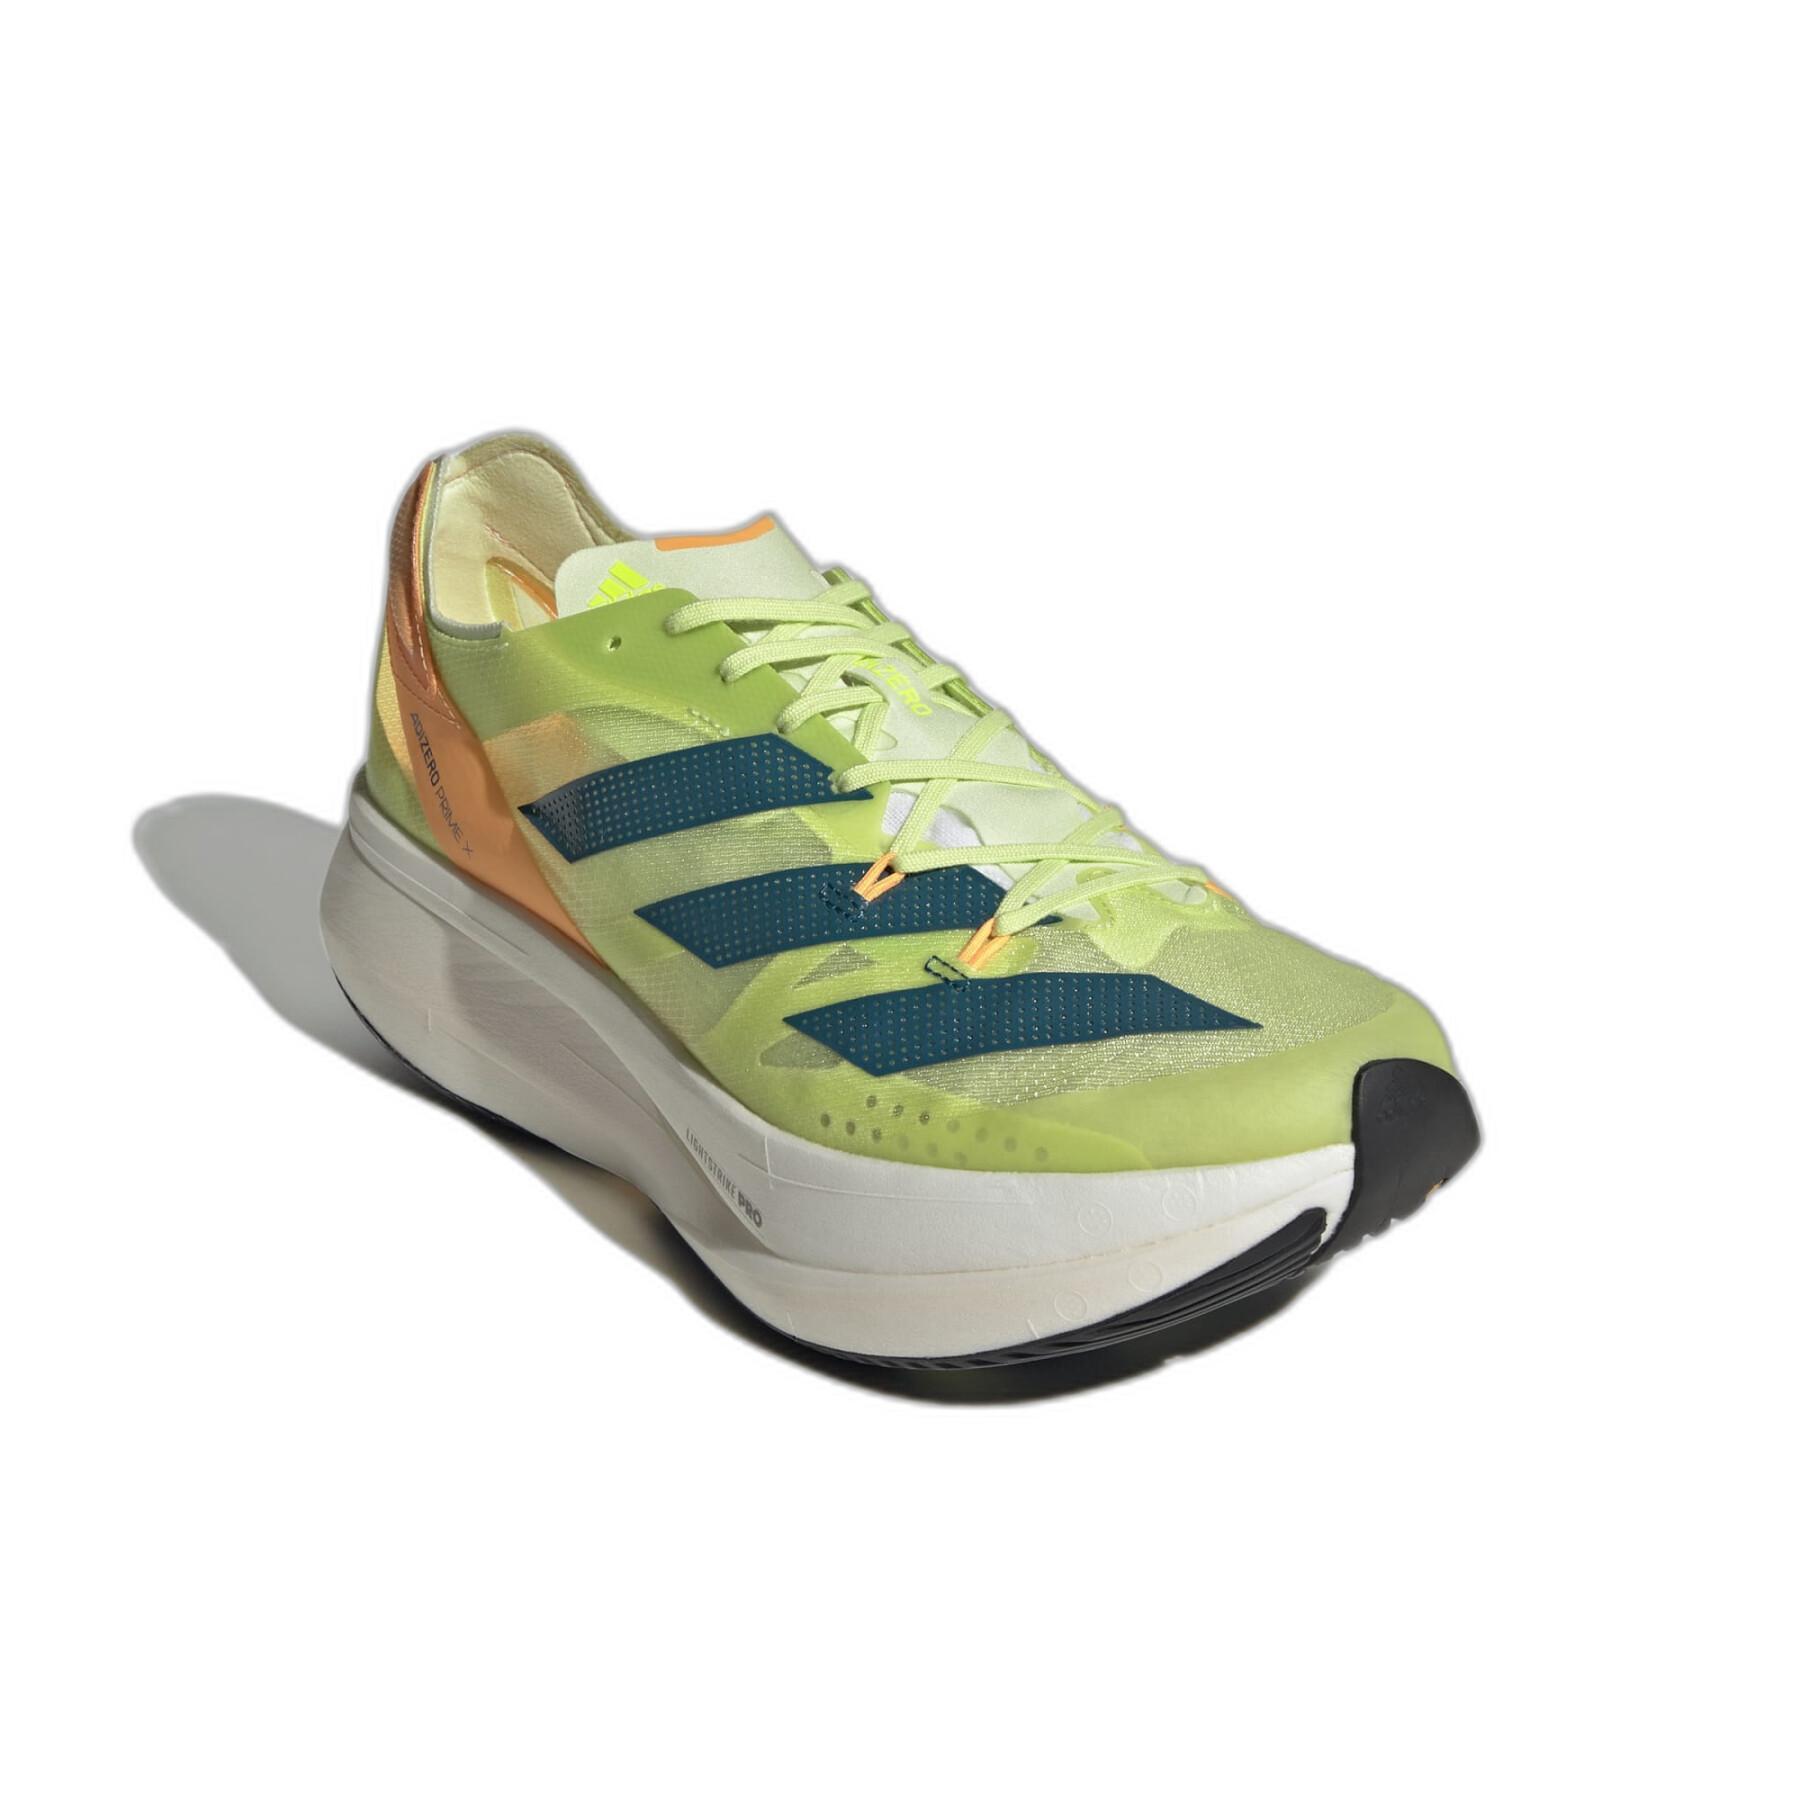 Chaussures de running enfant adidas Adizero Prime X